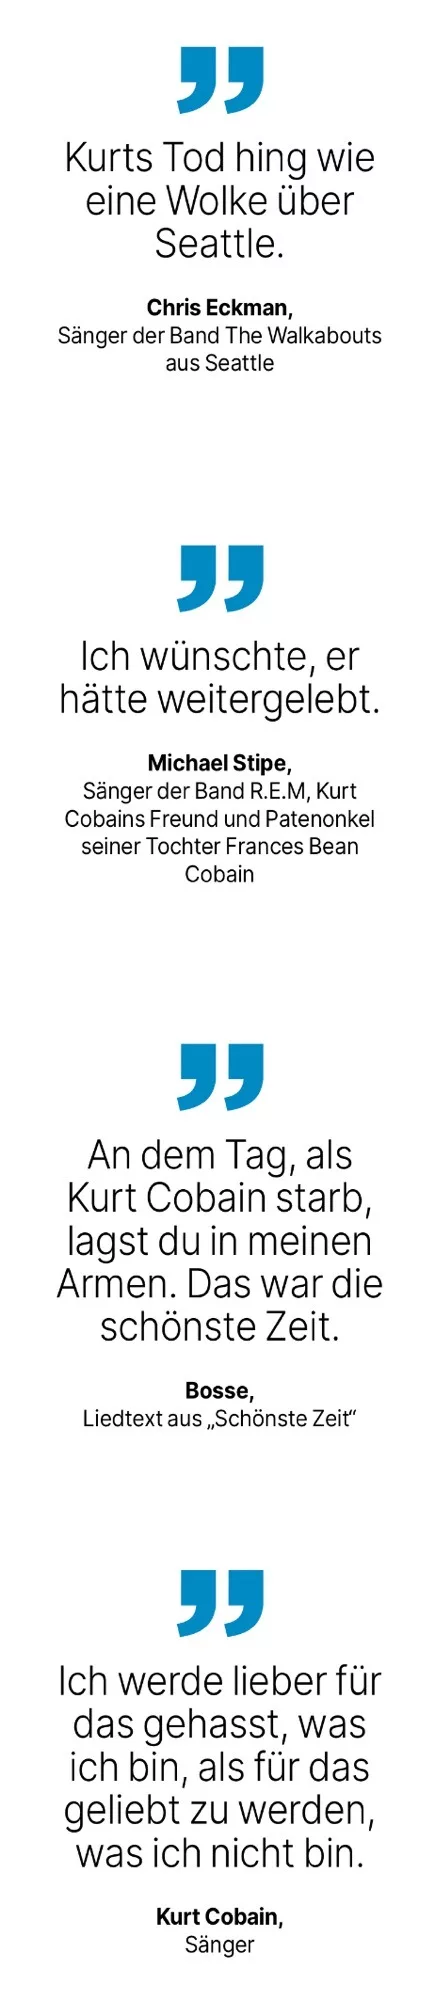 Zitate zu Kurt Cobain, da er heute vor 30 Jahren aus dem Leben schied.